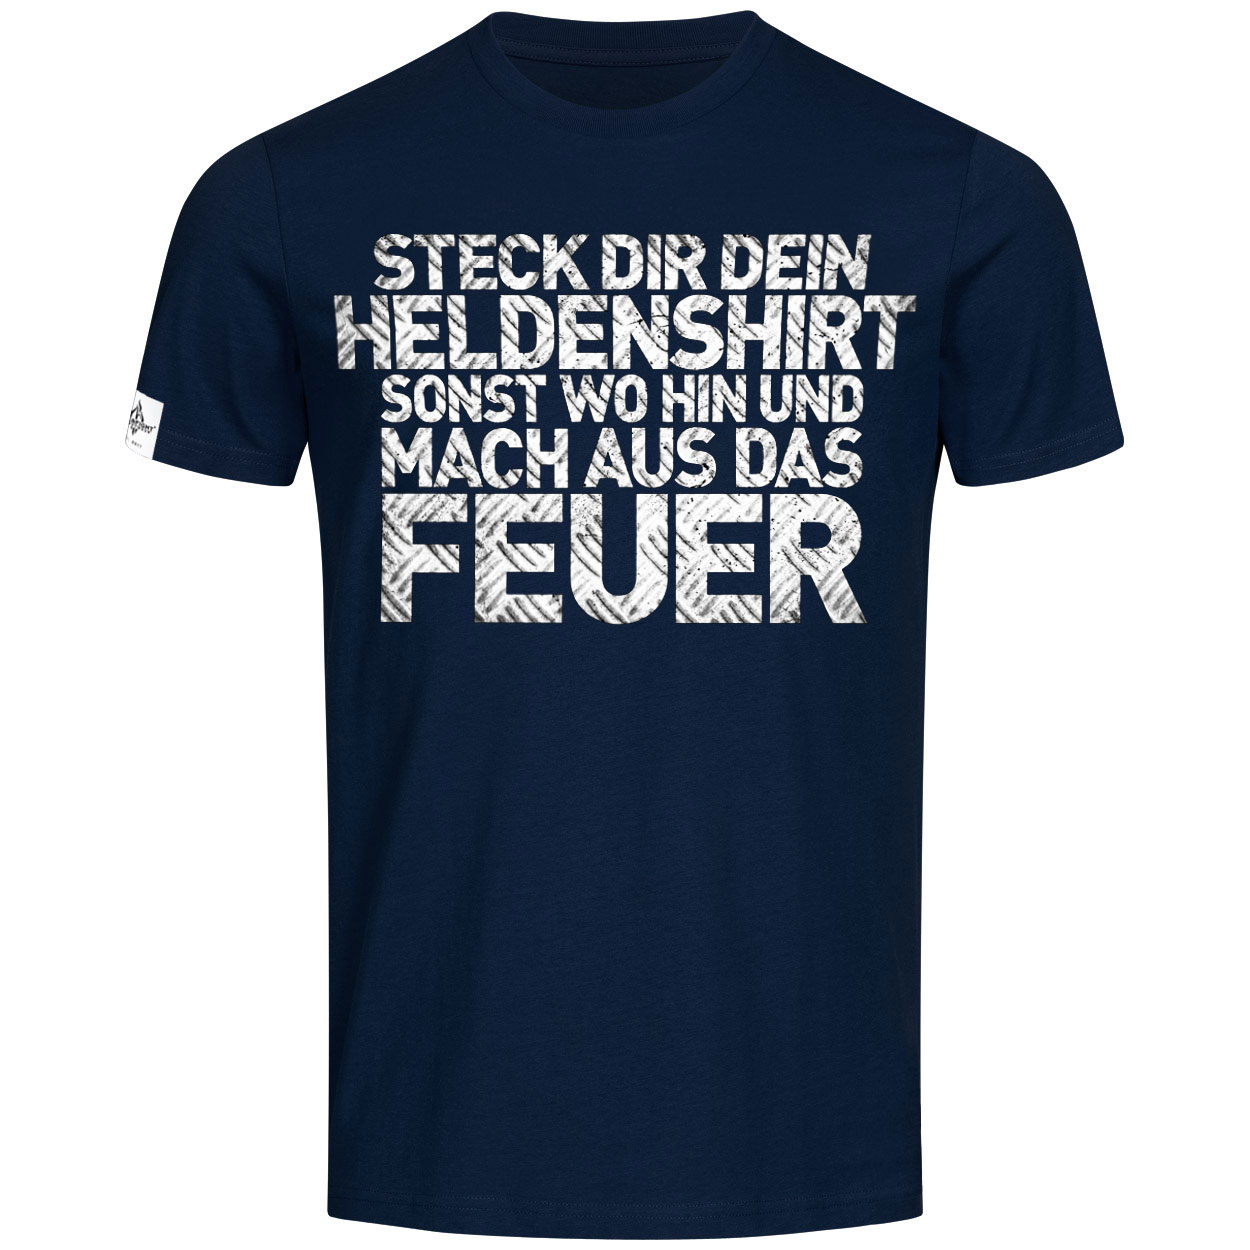 Heldenshirt - Feuerwehrmann T-Shirt